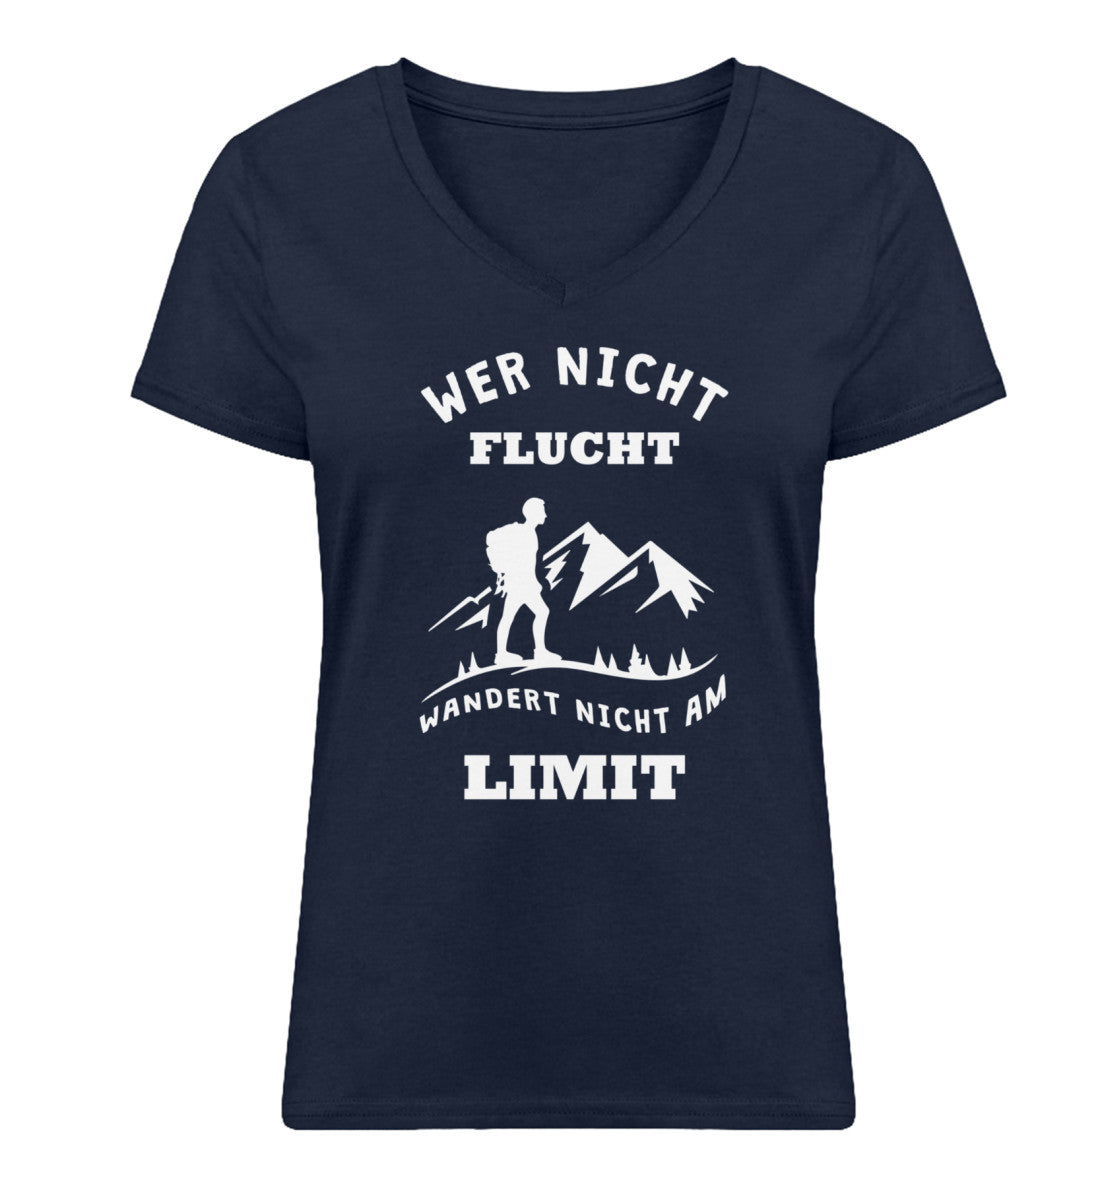 Wer nicht flucht wandert nicht am Limit - Damen Organic V-Neck Shirt berge Navyblau